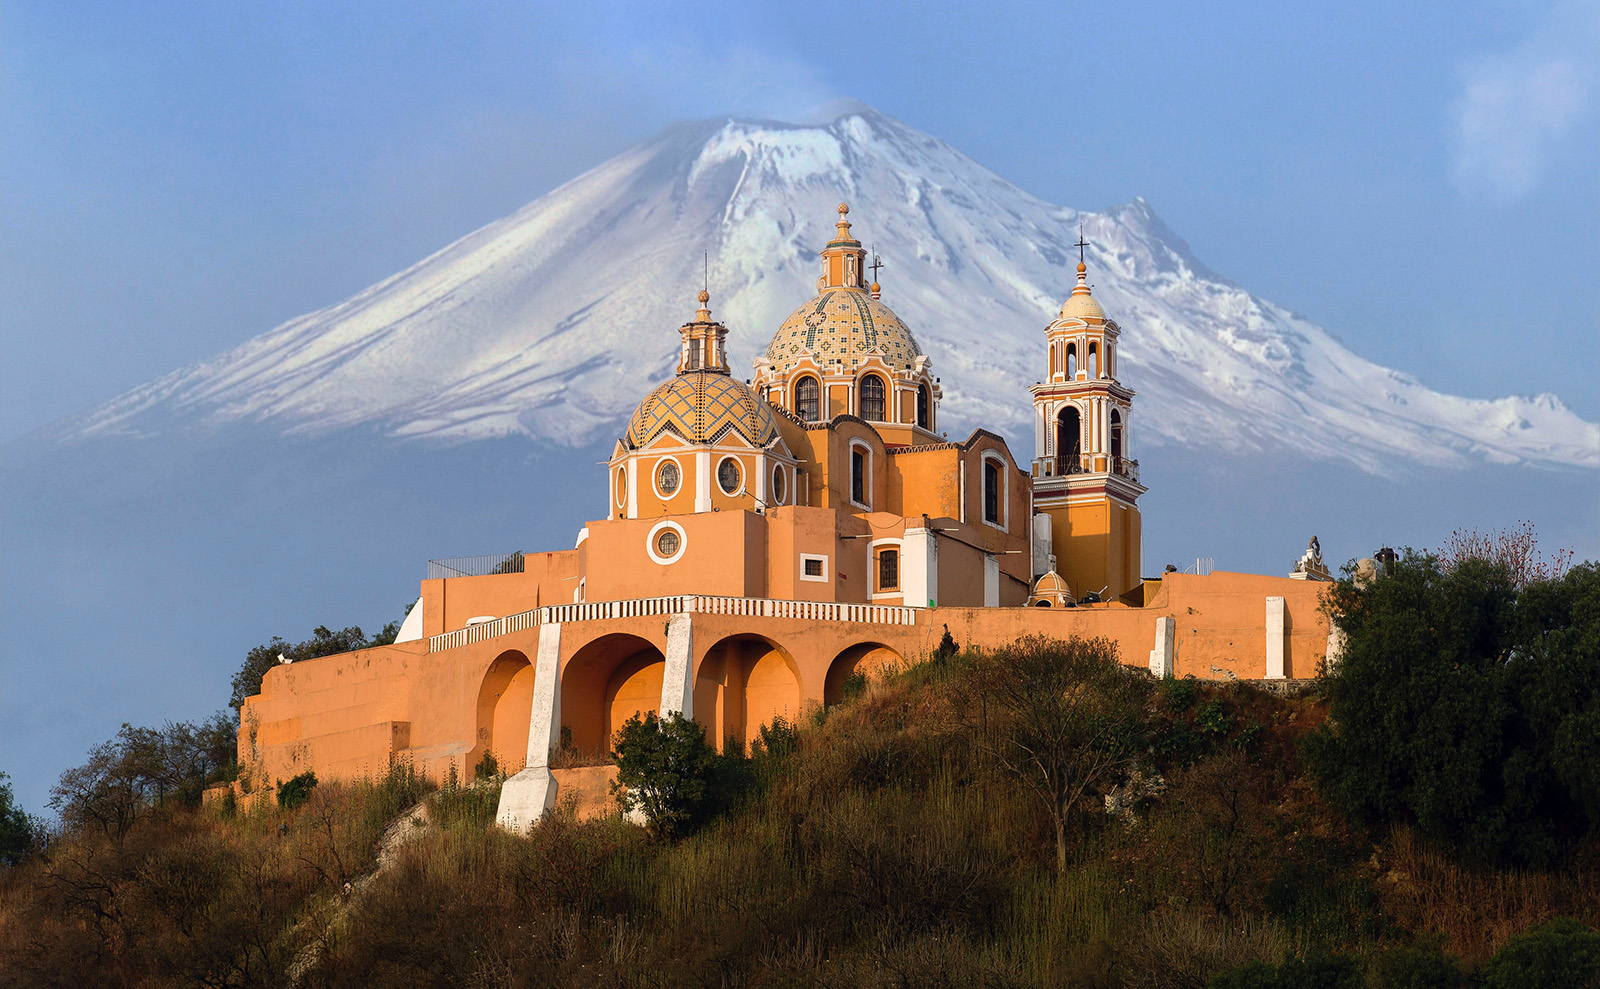 peach-colored Santuario de la Virgen de los Remedios church with domes in San Pedro Cholula, Mexico